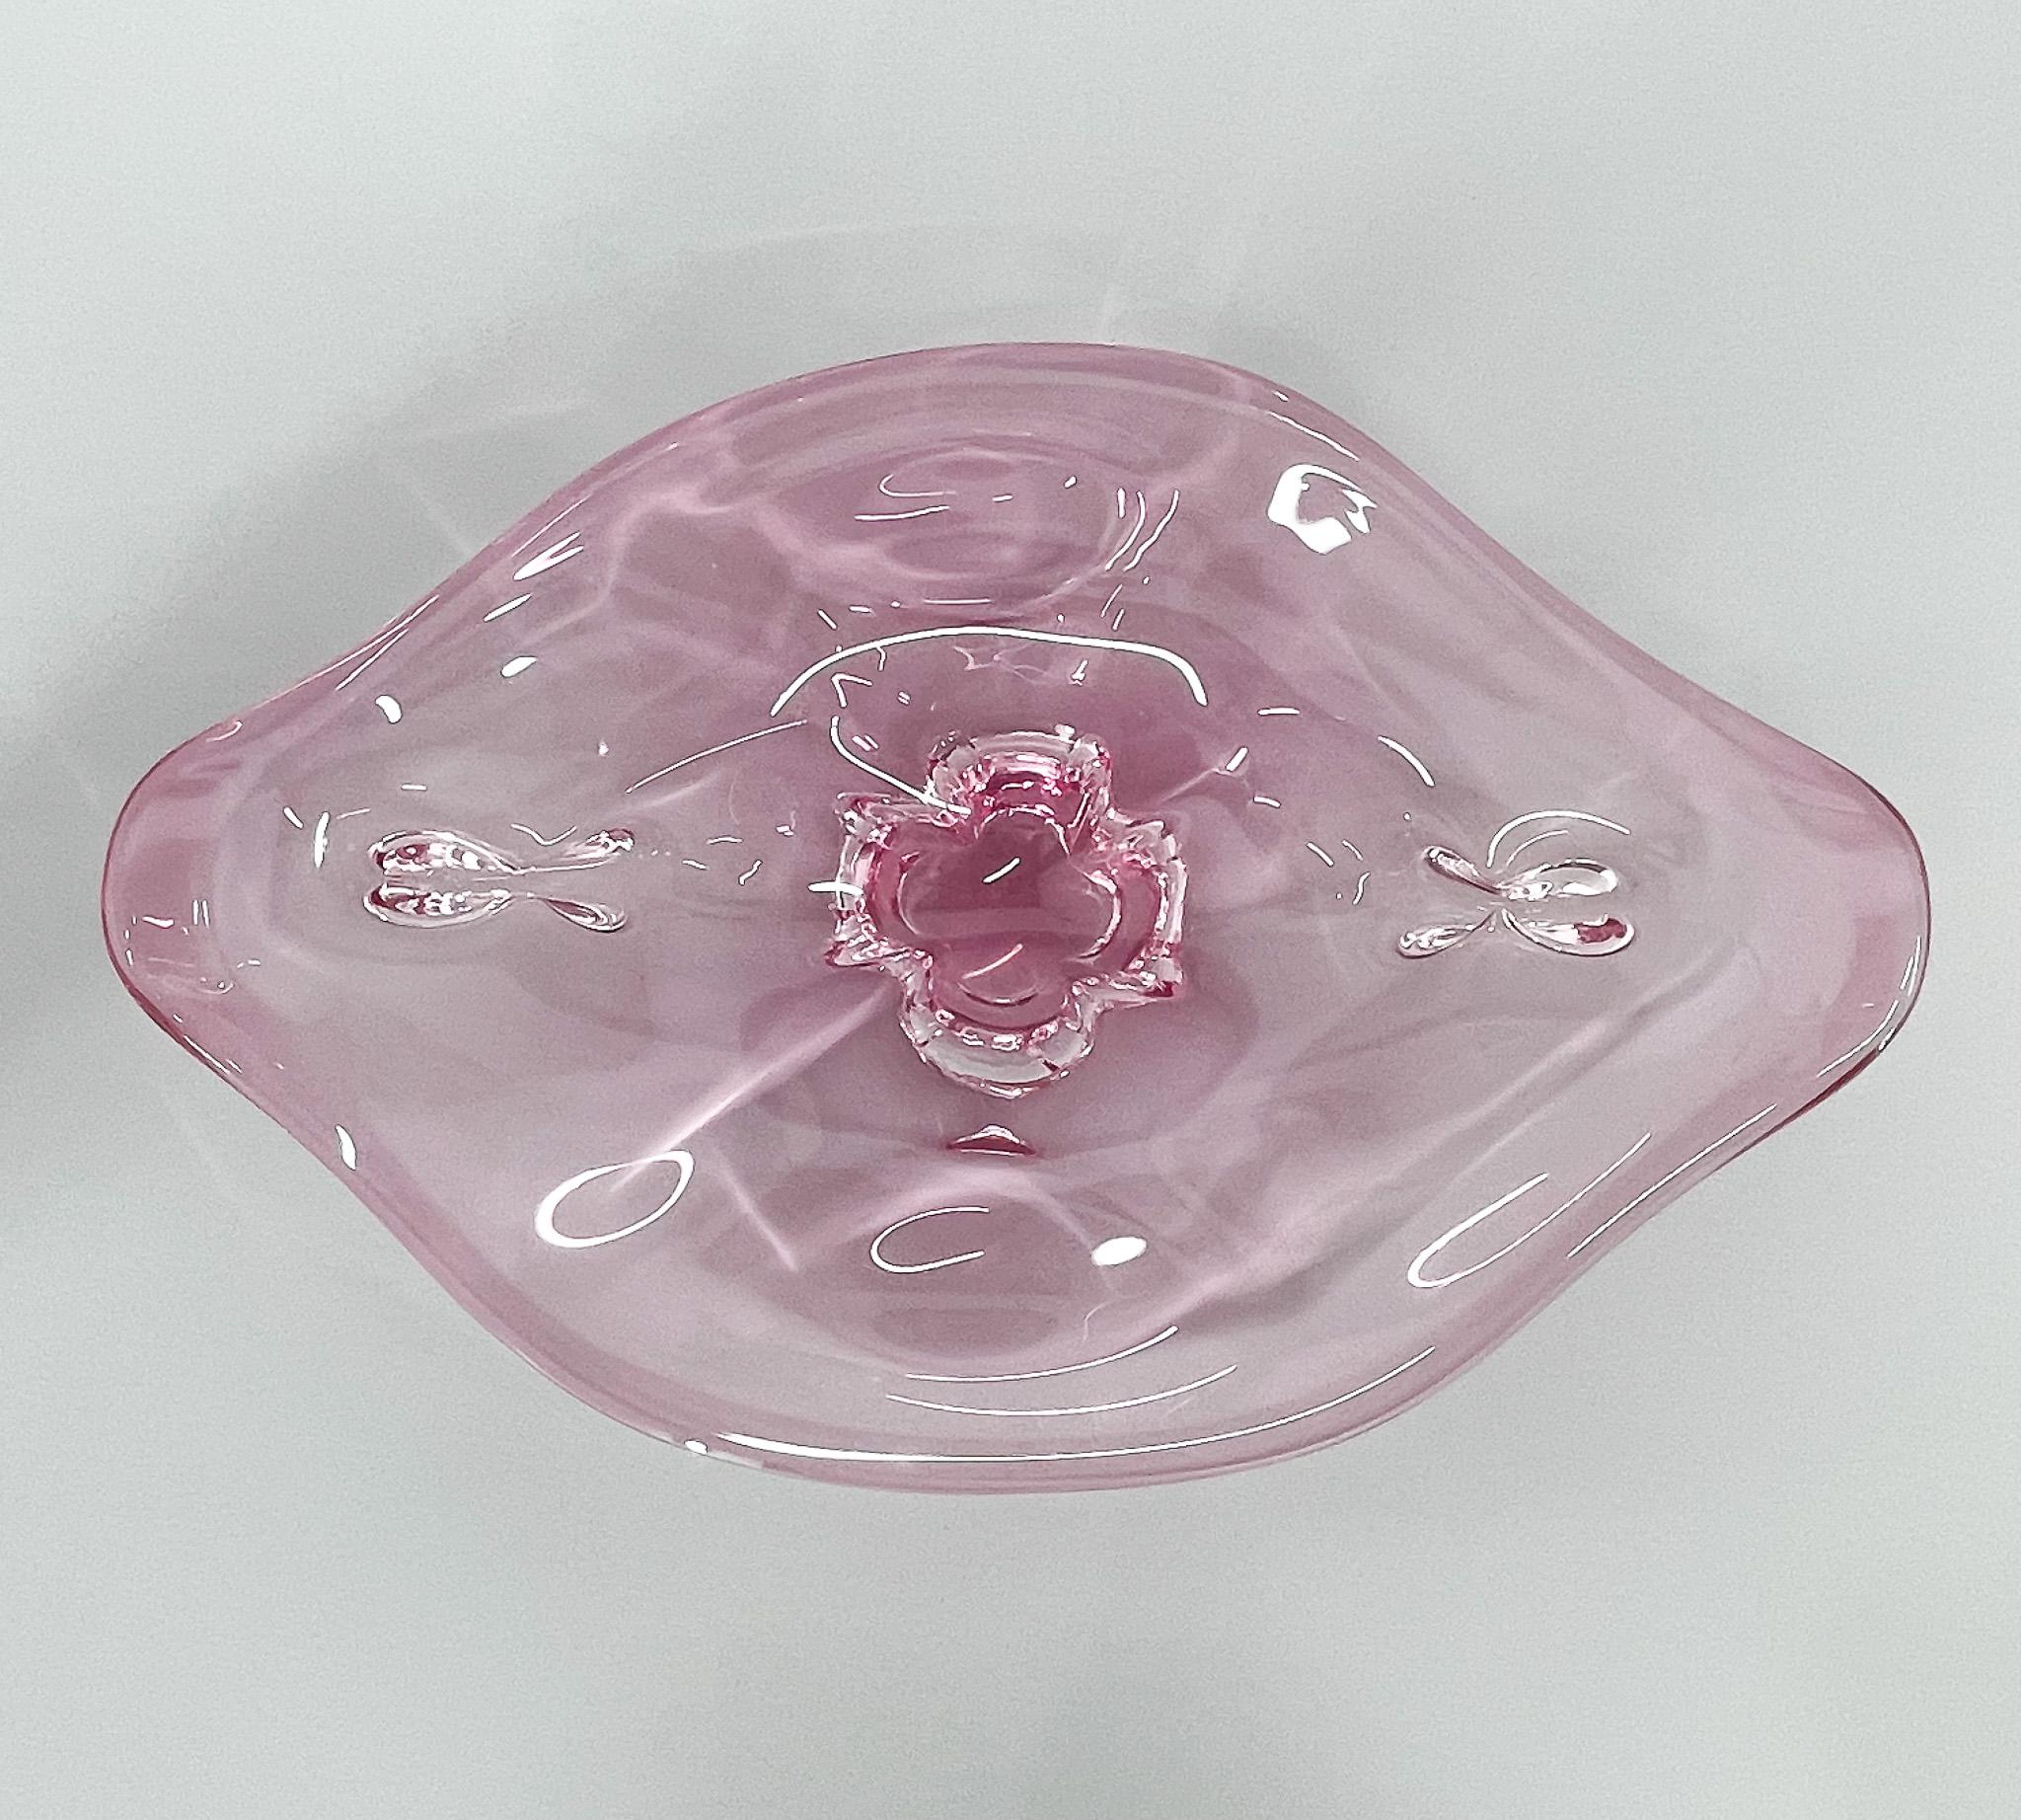 1960s Czech Art Glass Bowl by Josef Hospodka for Chribska Glassworks For Sale 2